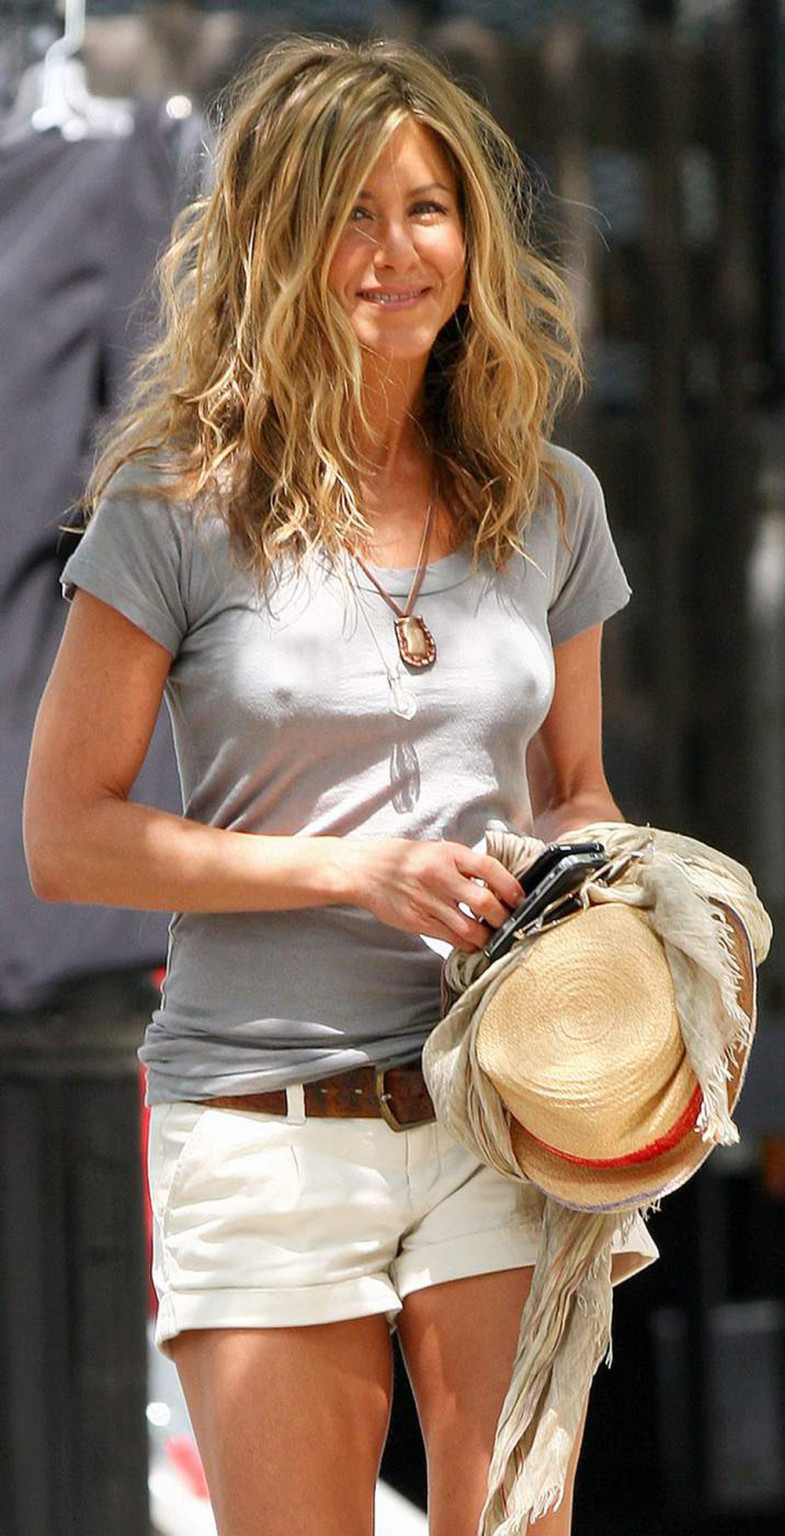 Jennifer Aniston upskirt and perfect cleavage #75281112